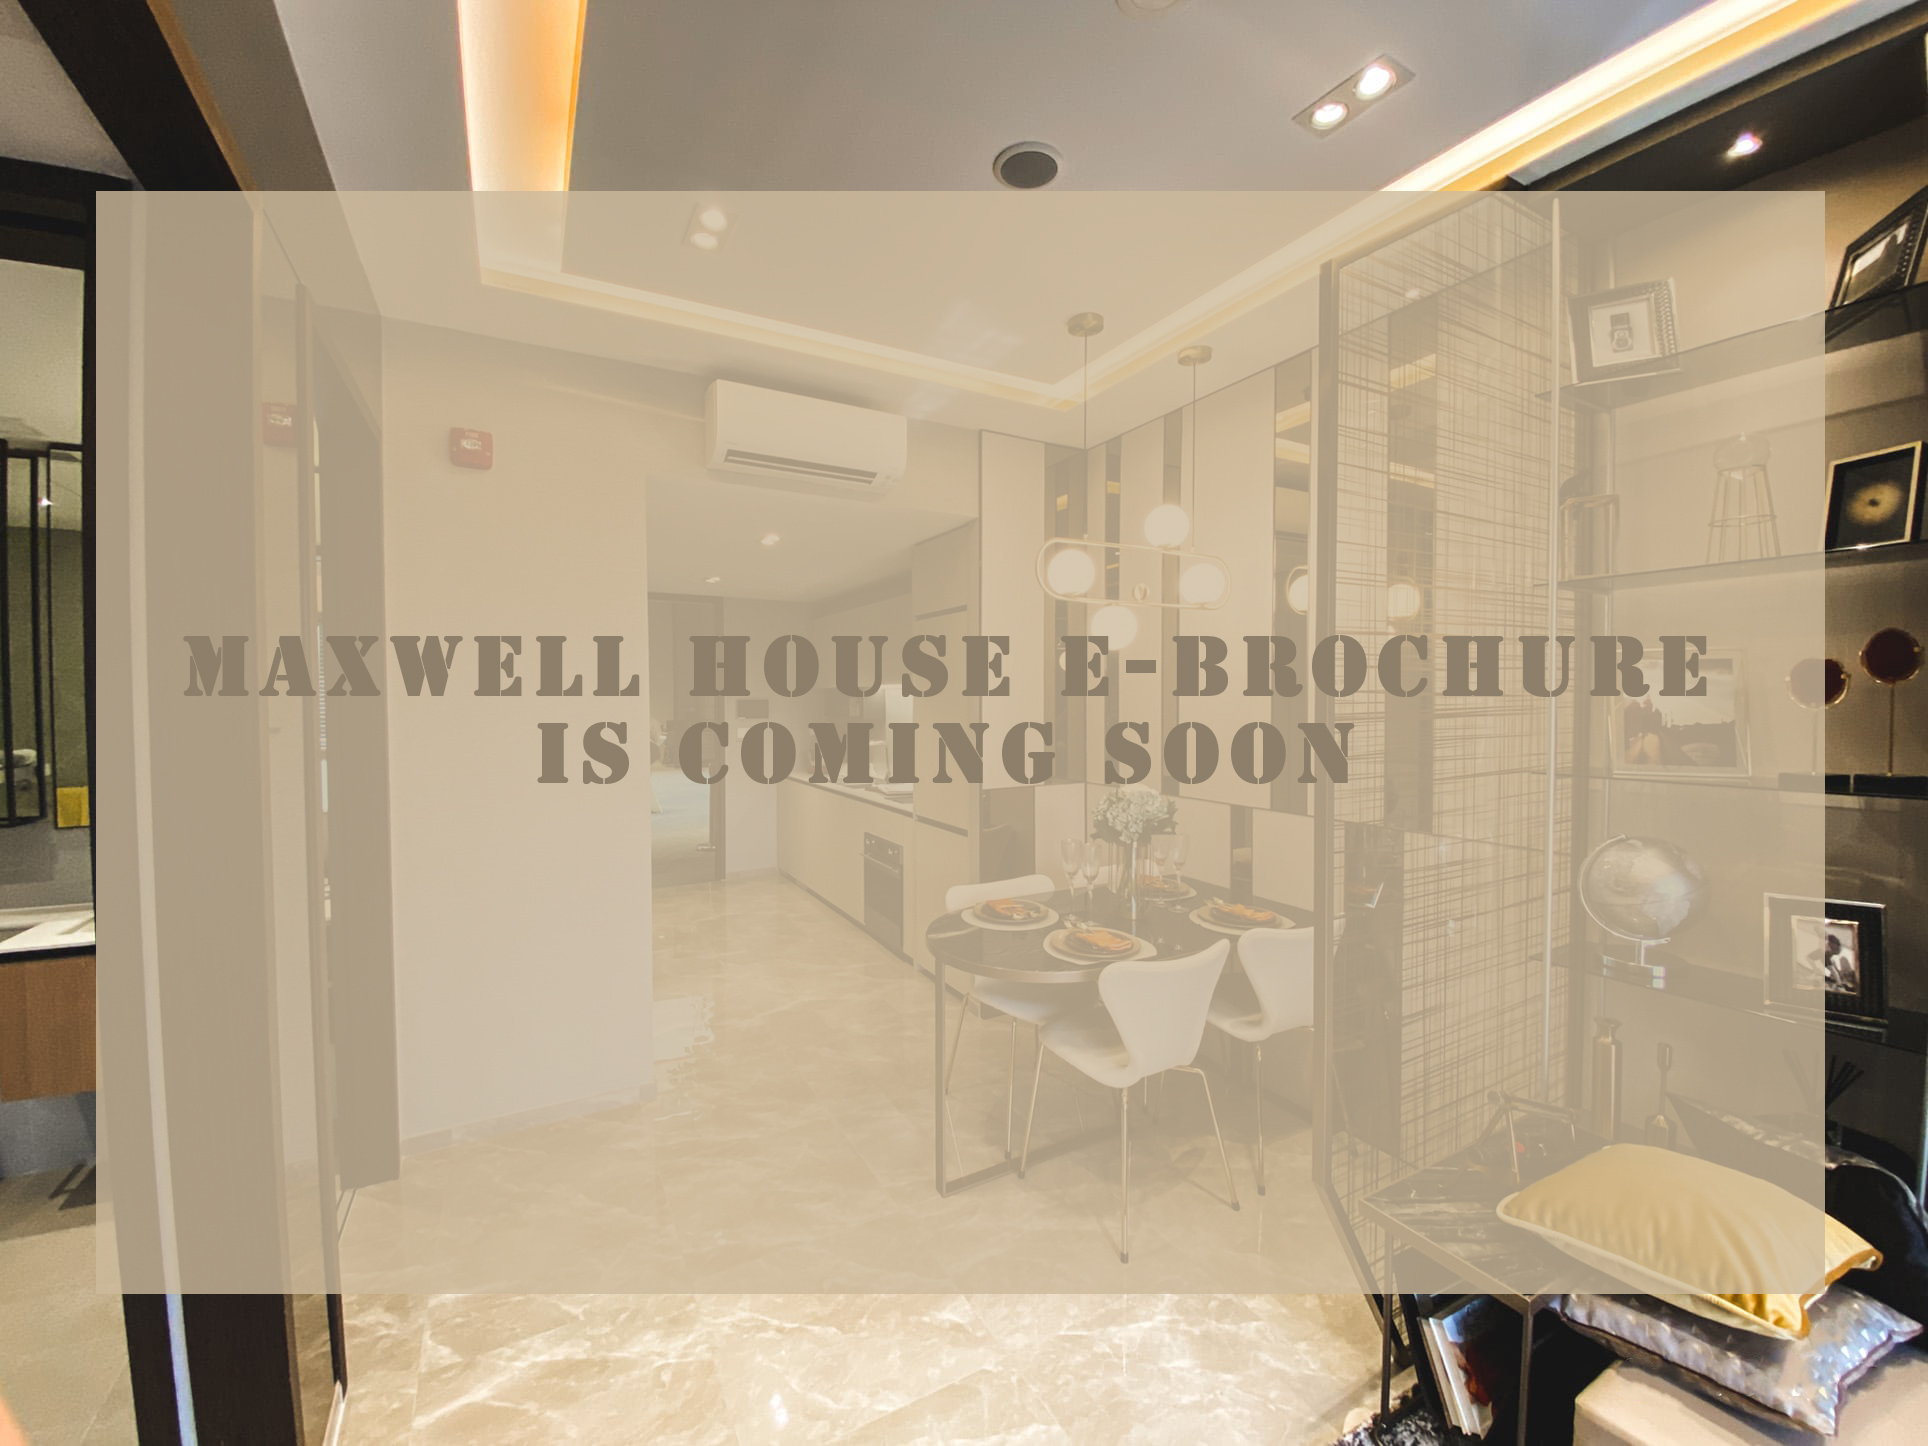 Maxwell-House-E-brochure